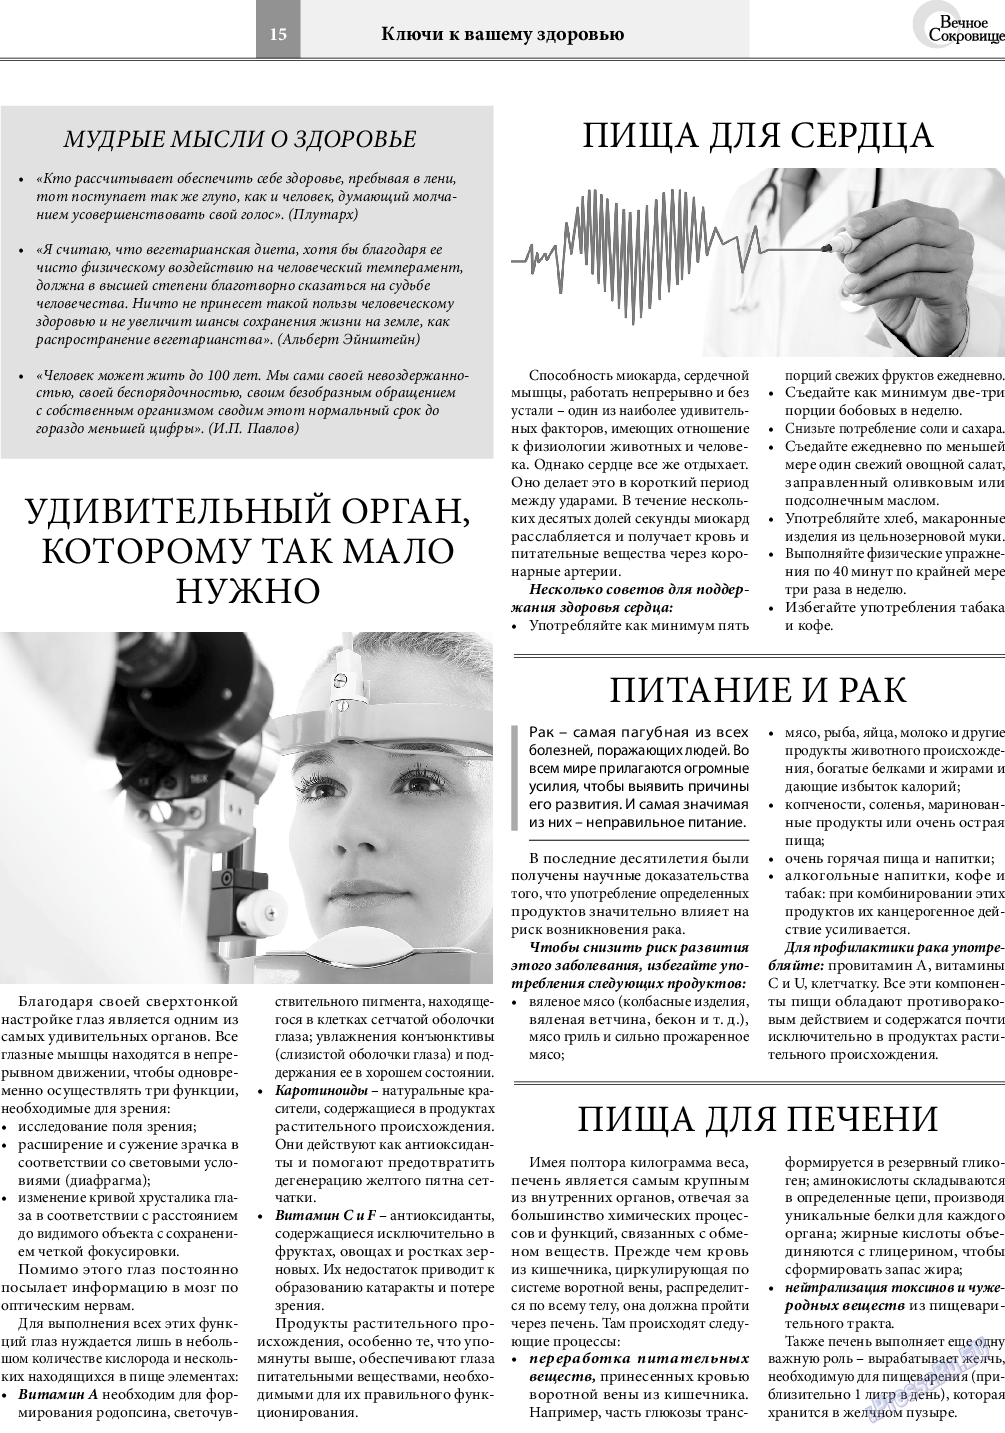 Вечное сокровище, газета. 2021 №1 стр.15